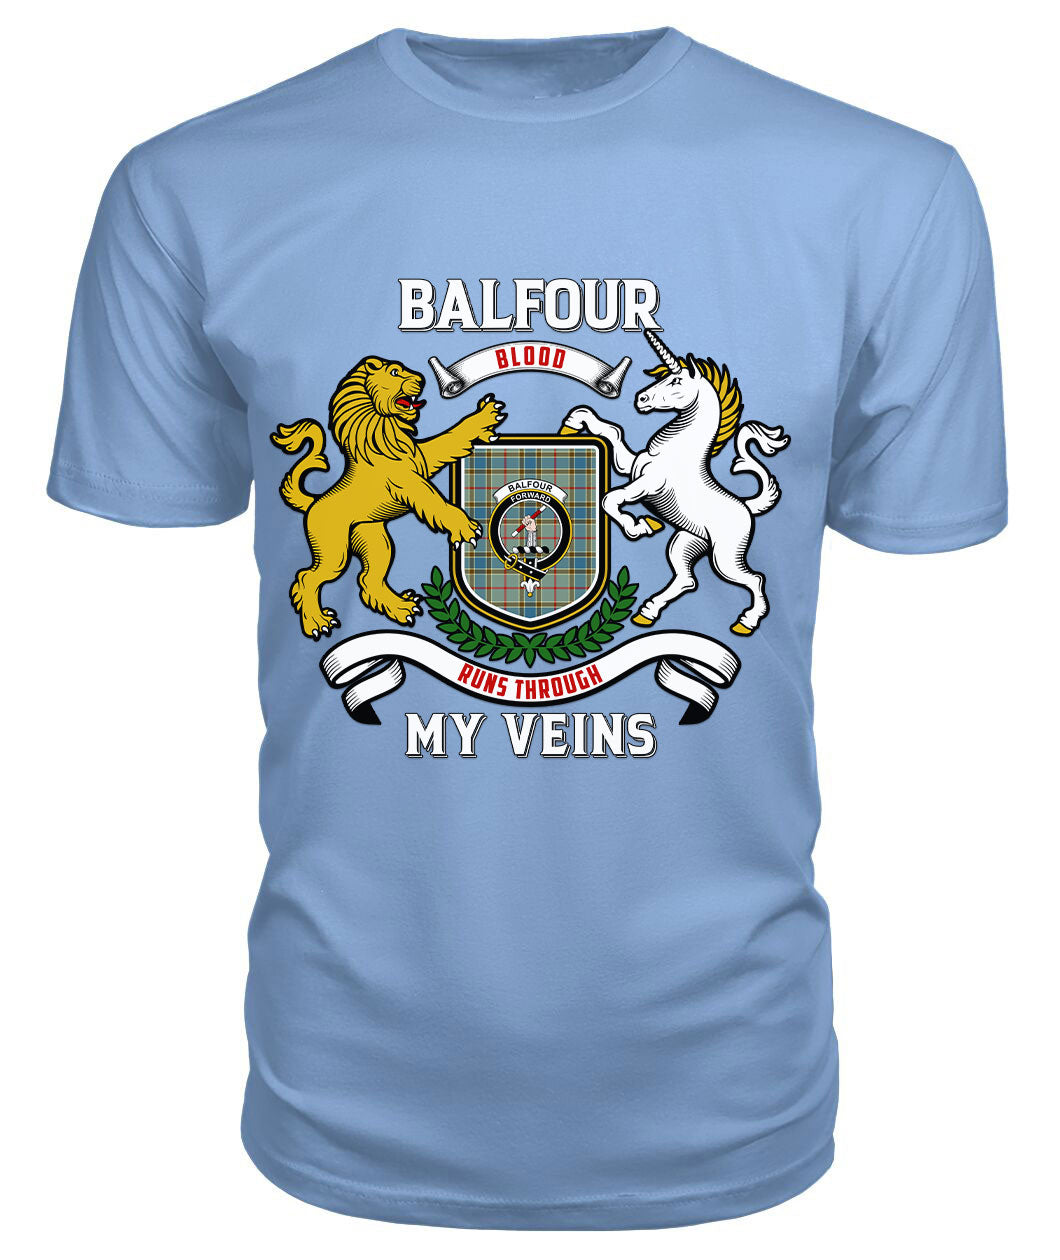 Balfour Blue Tartan Crest 2D T-shirt - Blood Runs Through My Veins Style